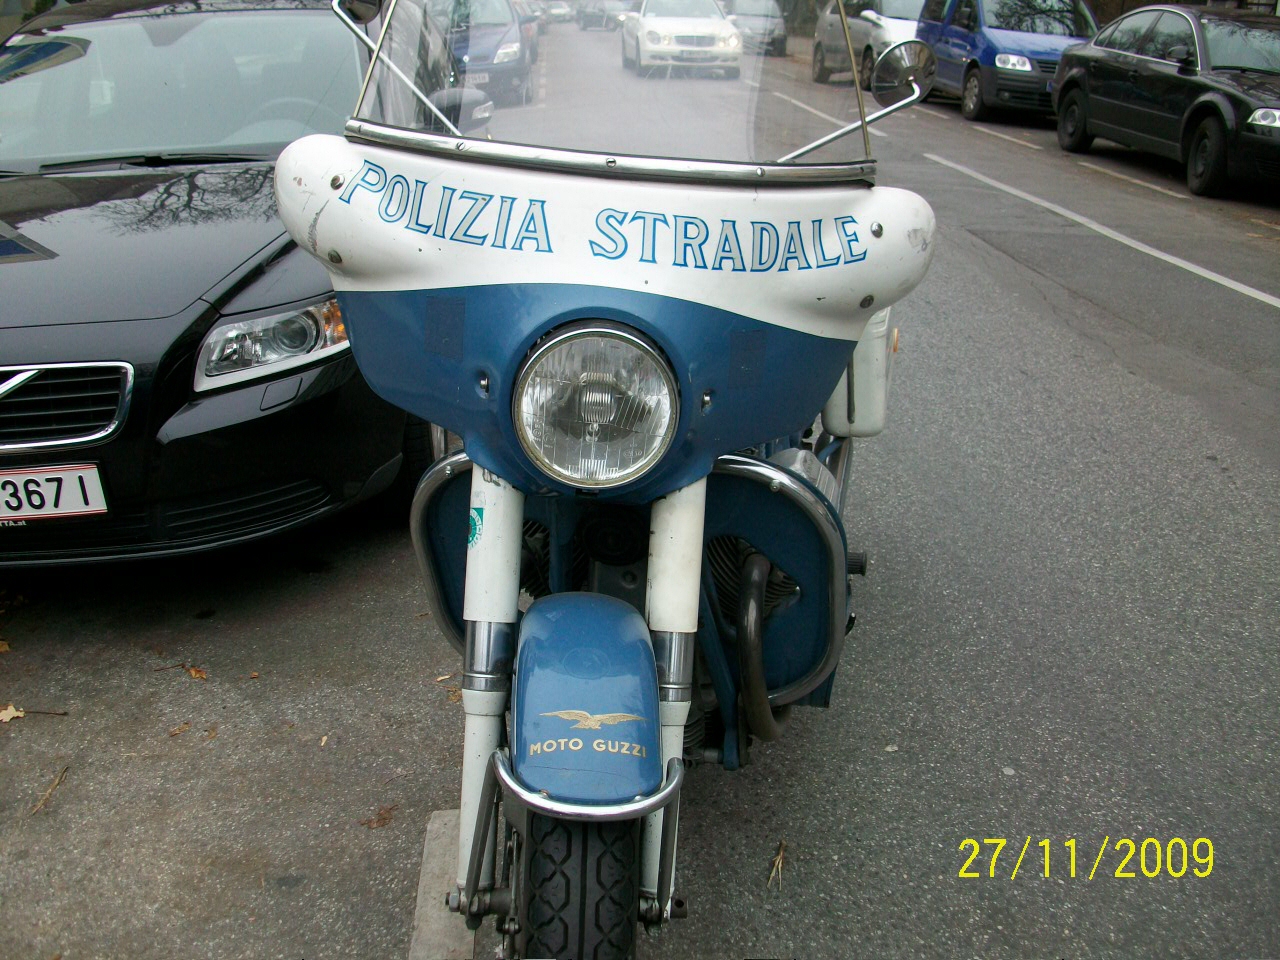 V700 Polizia Stradale owned by Wiener Wilhelm from Vienna, Austria.